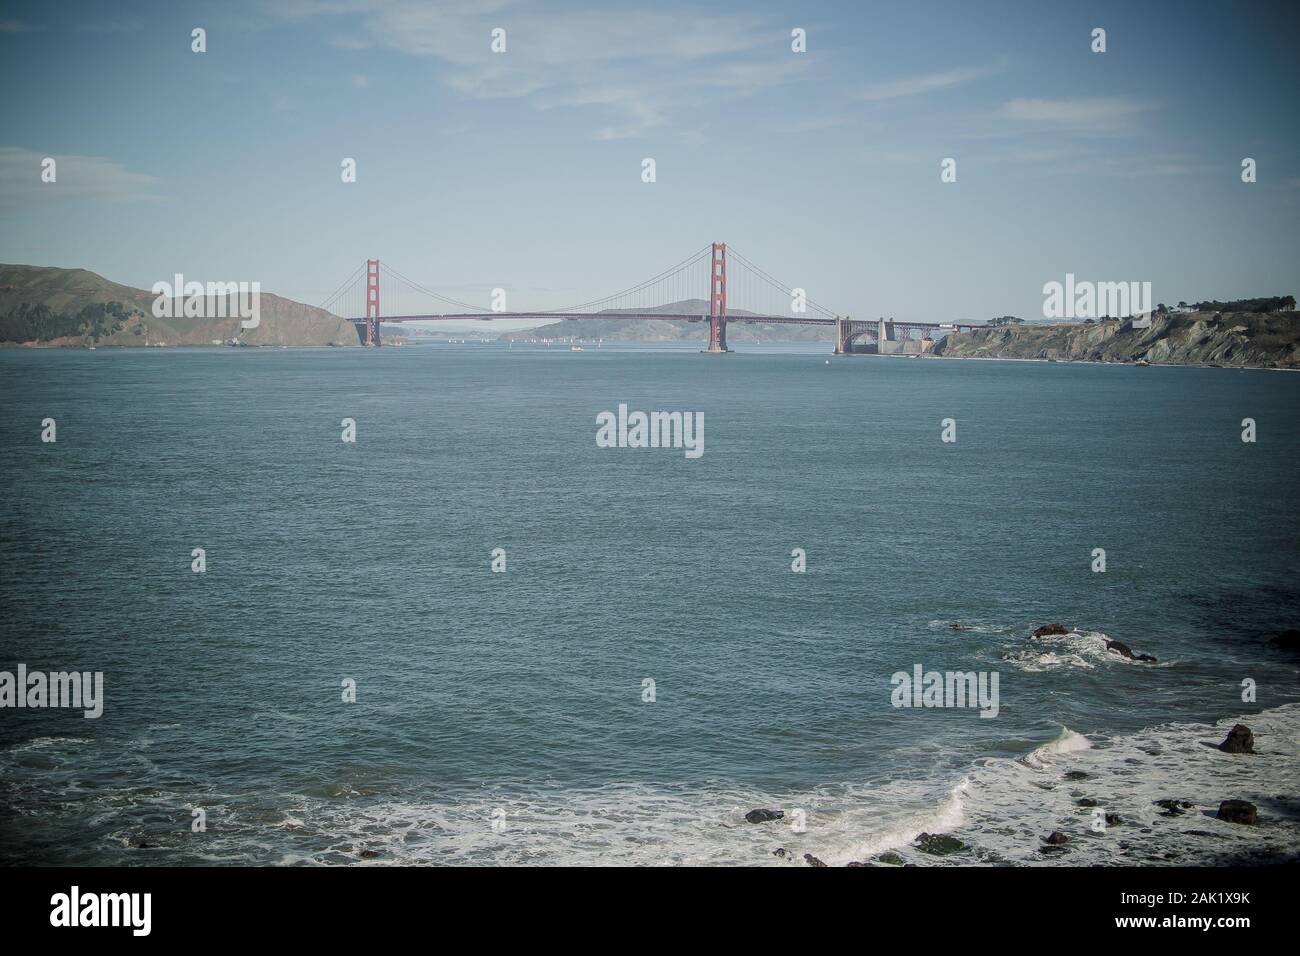 Vue sur la baie de San Francisco et le pont du Golden Gate, pris de la zone de loisirs du Golden Gate, à l'ouest du pont. Banque D'Images